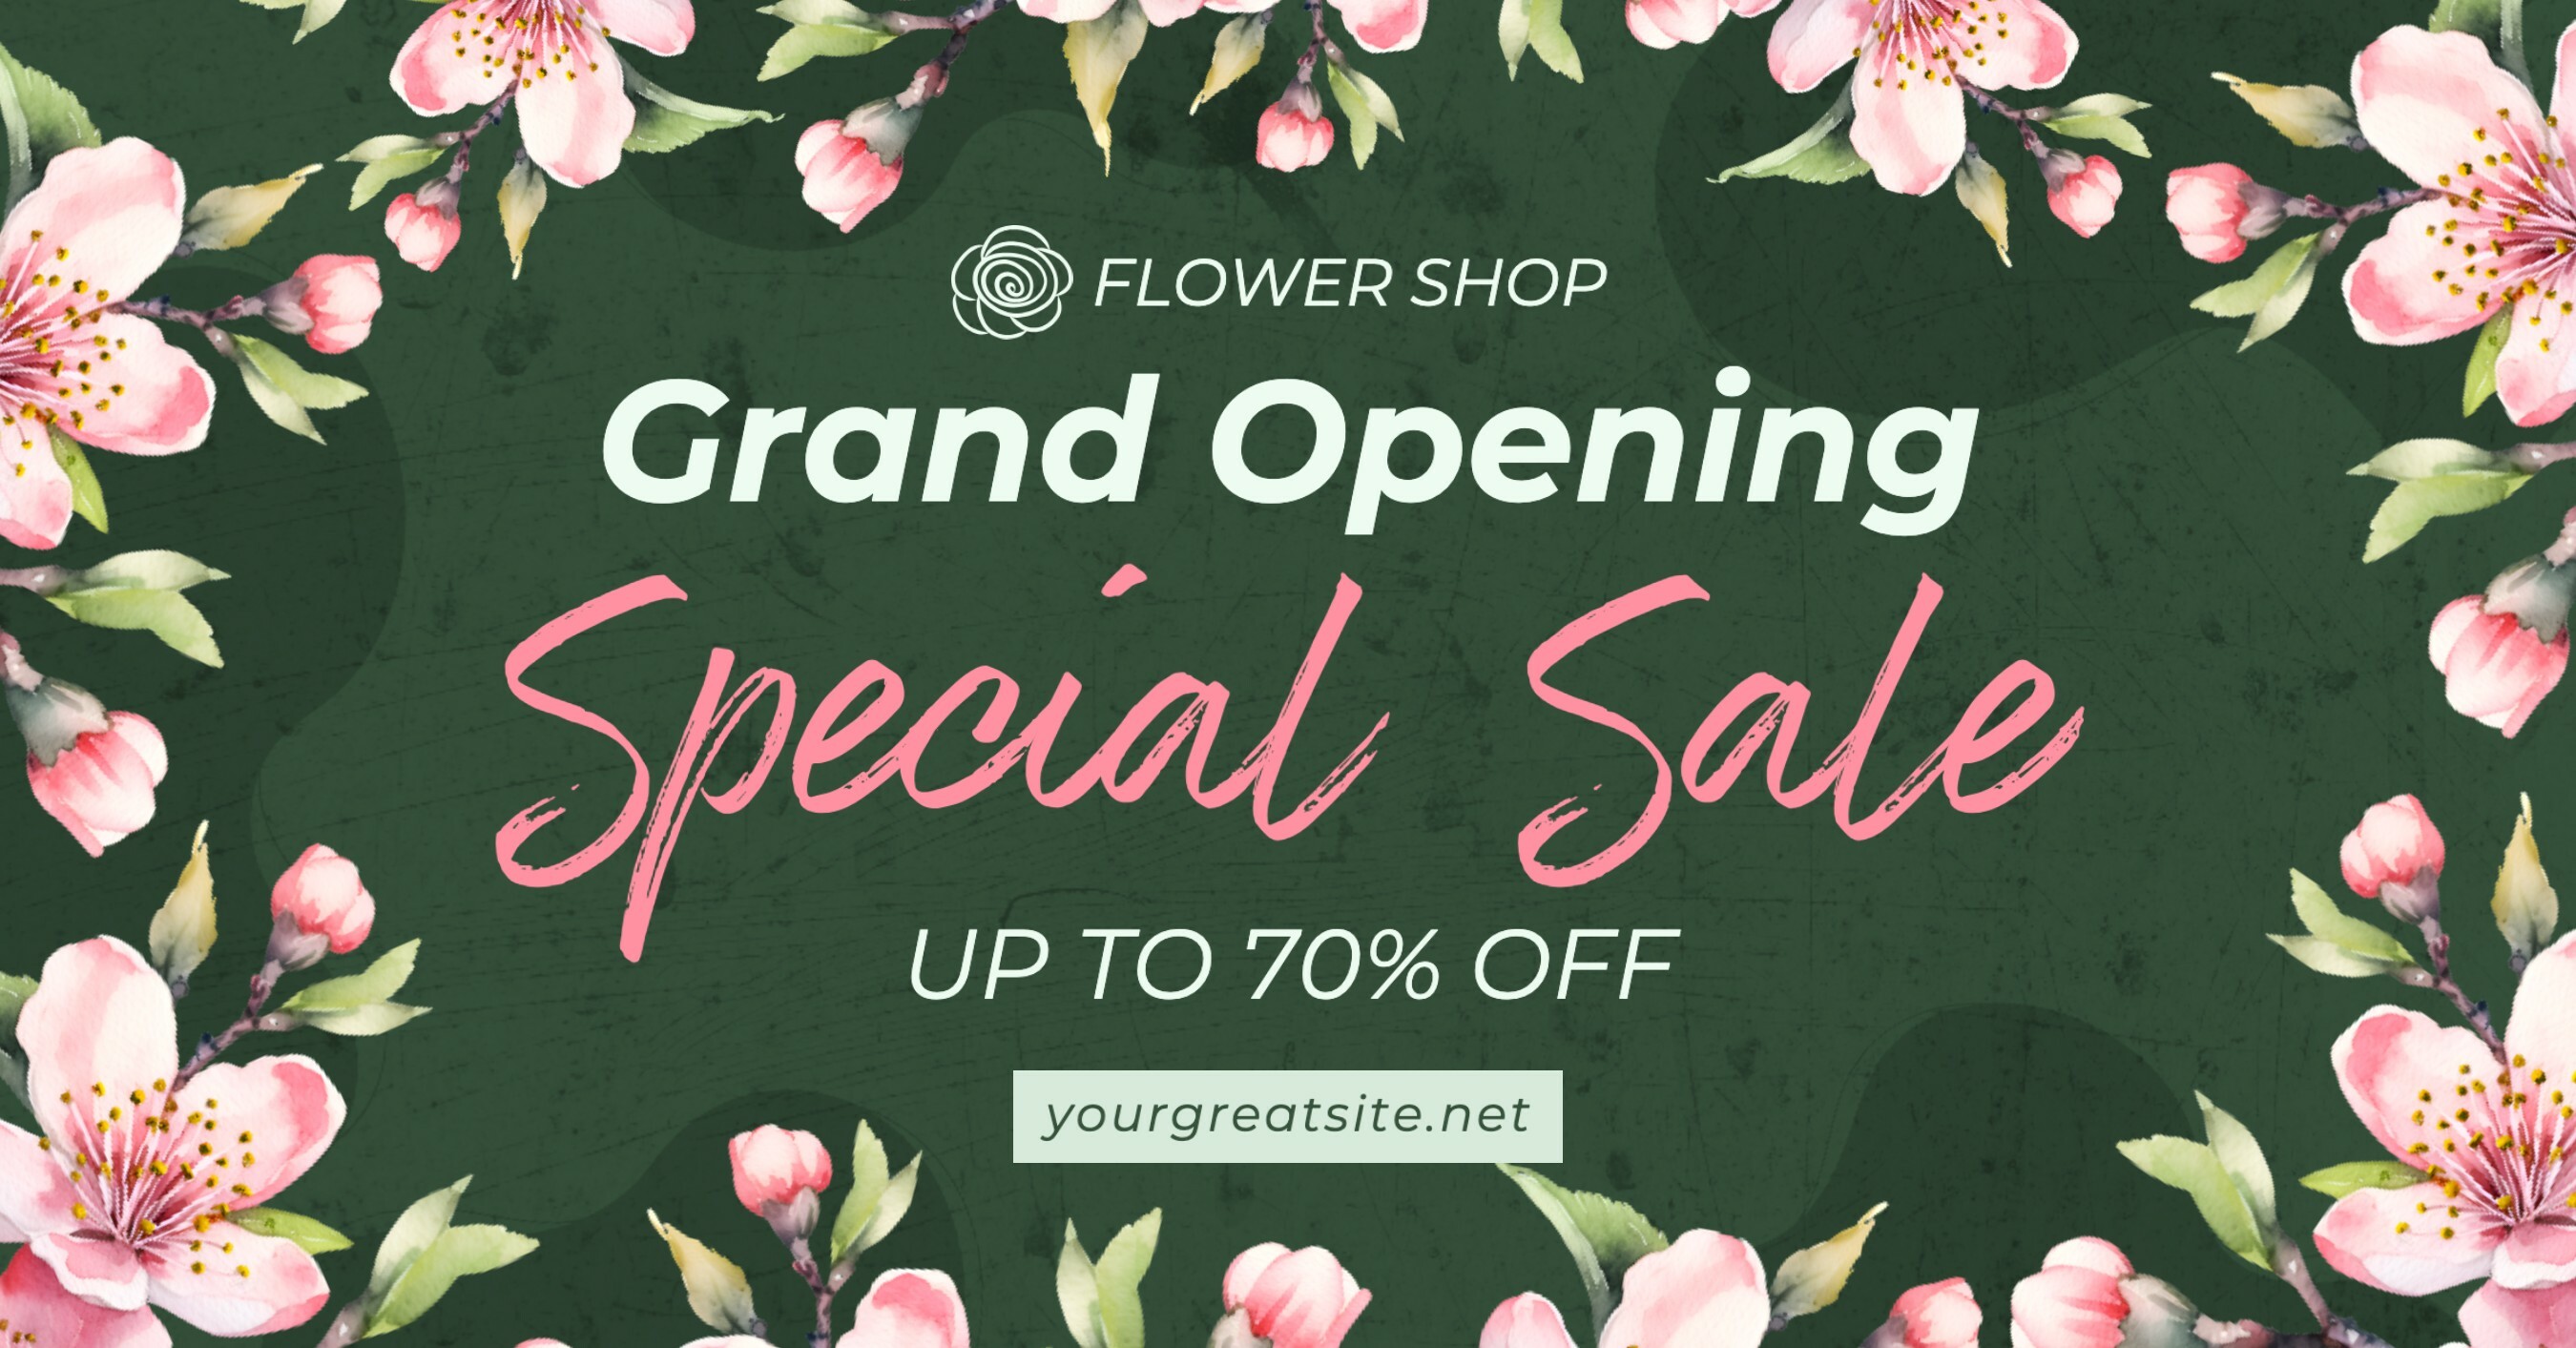 Floral Grand Opening Flower Shop Facebook Ads